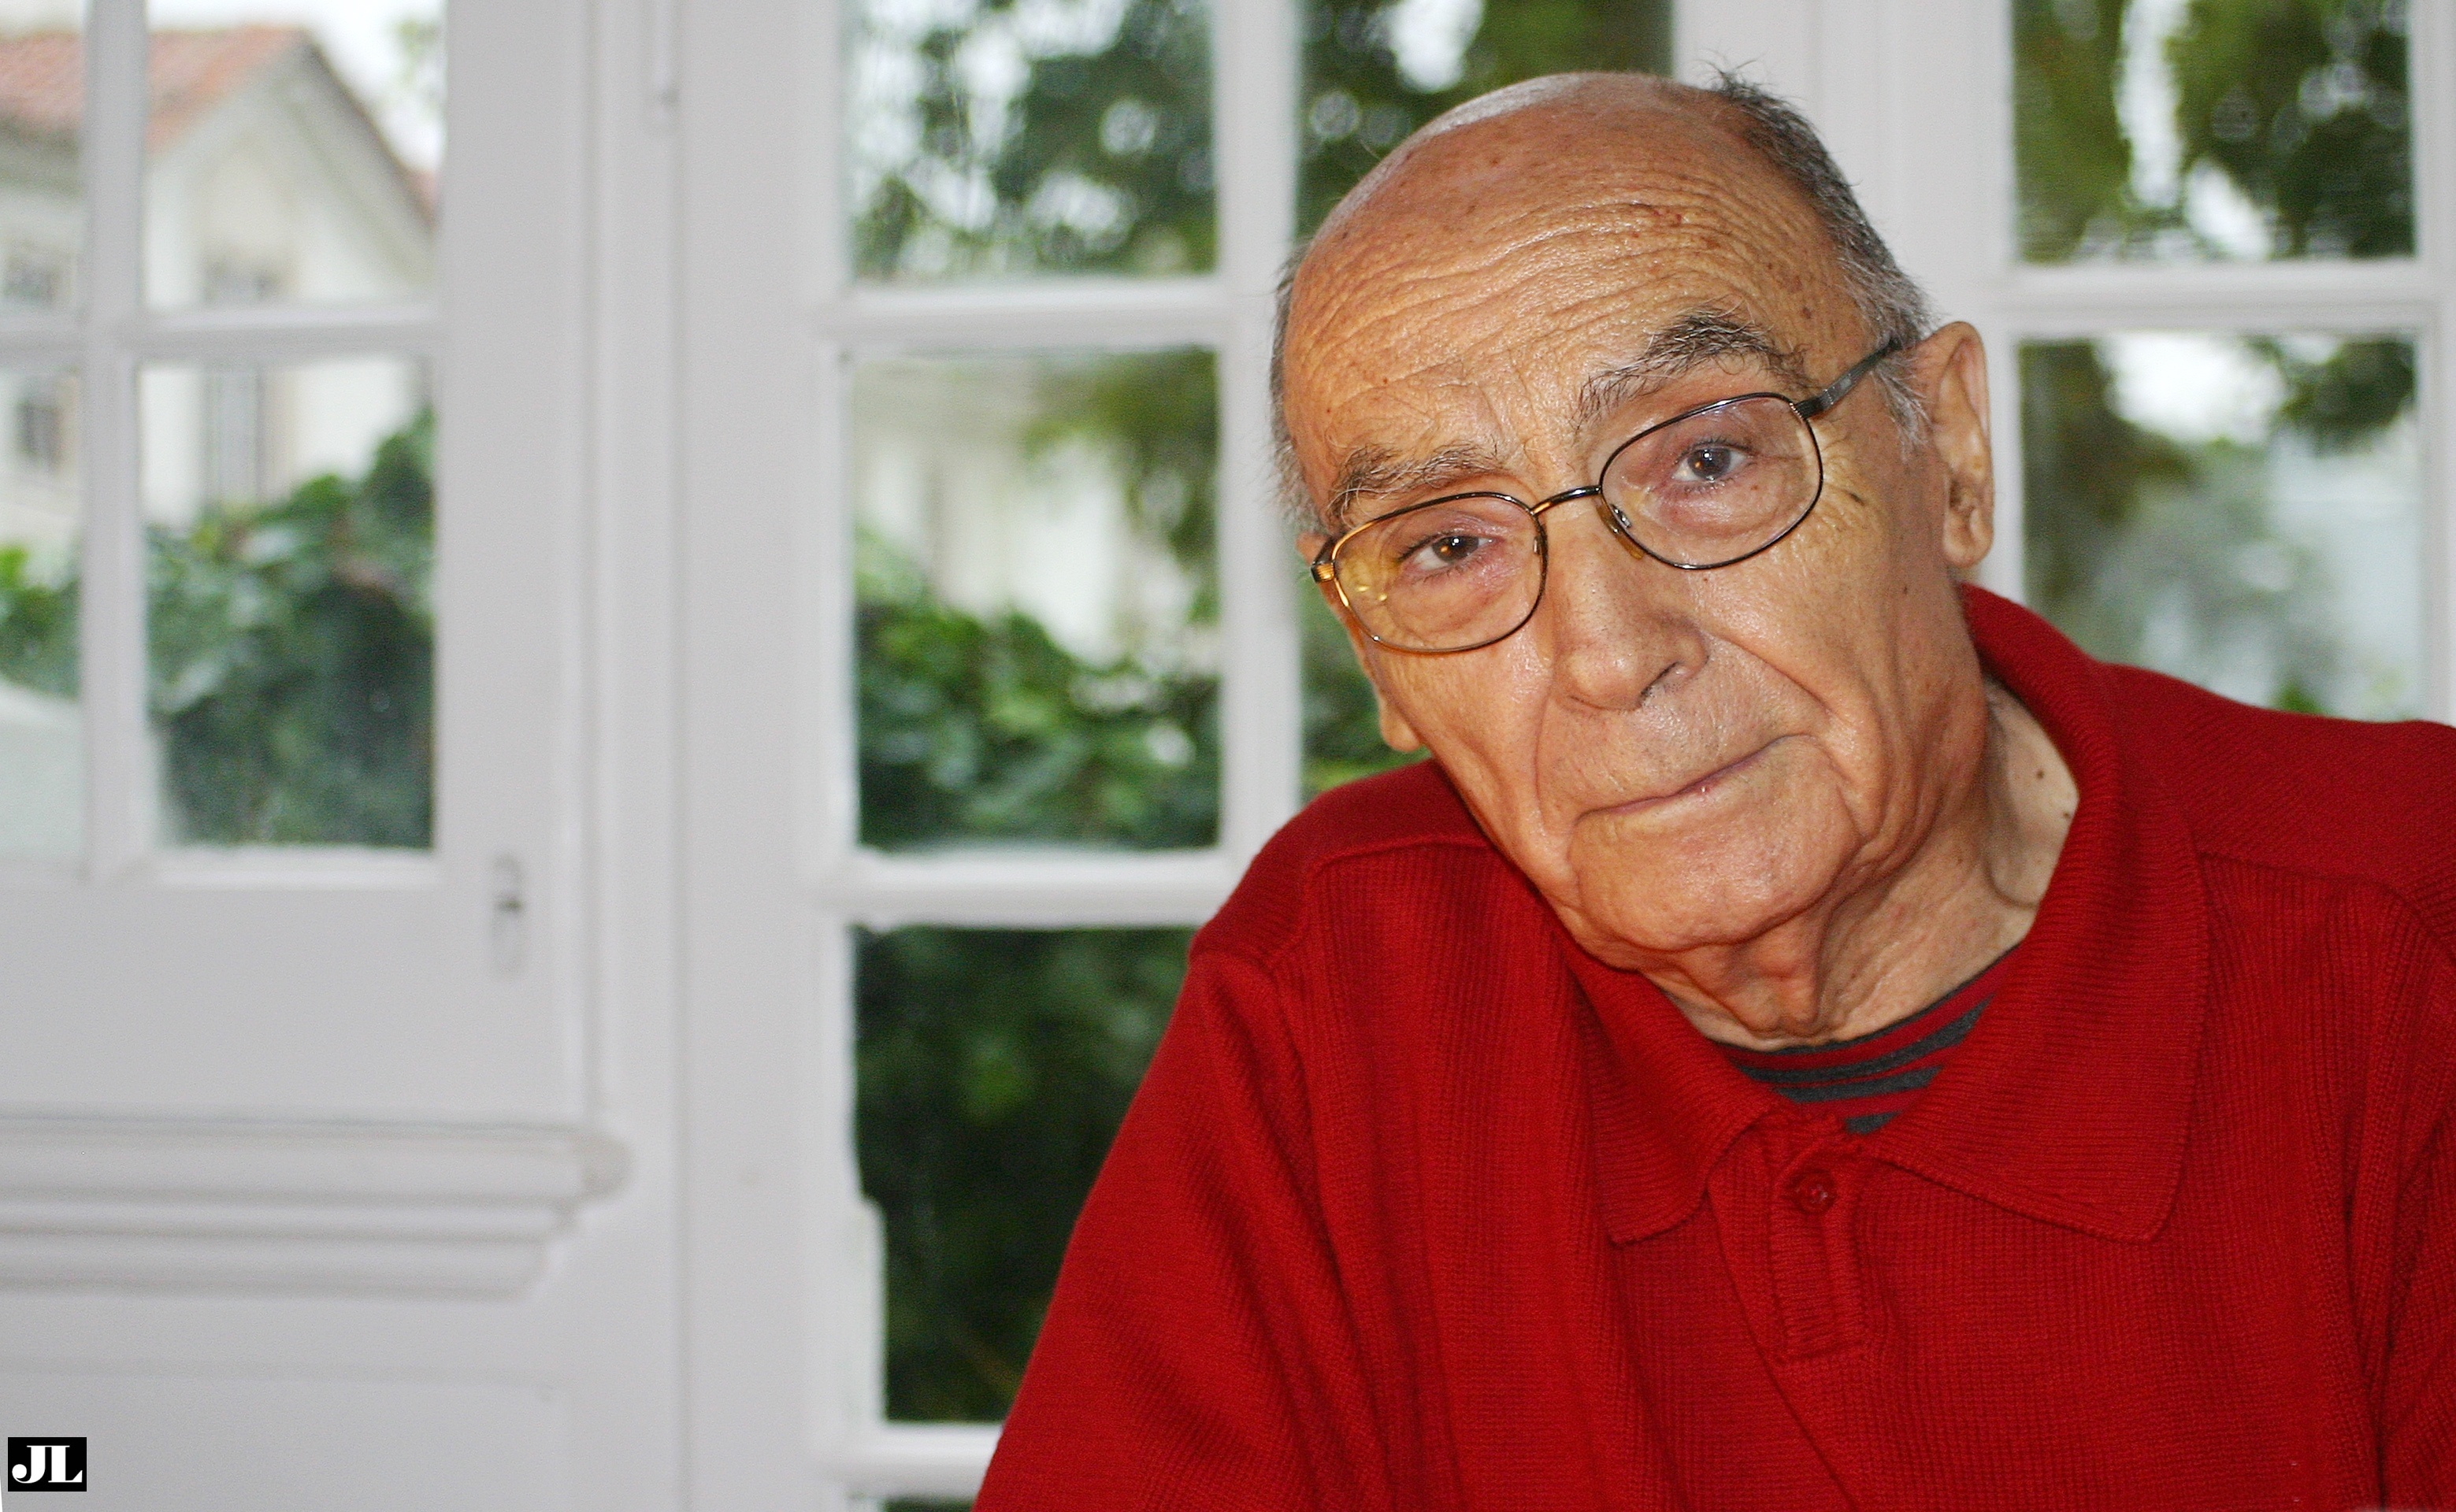 The centenary of Saramago